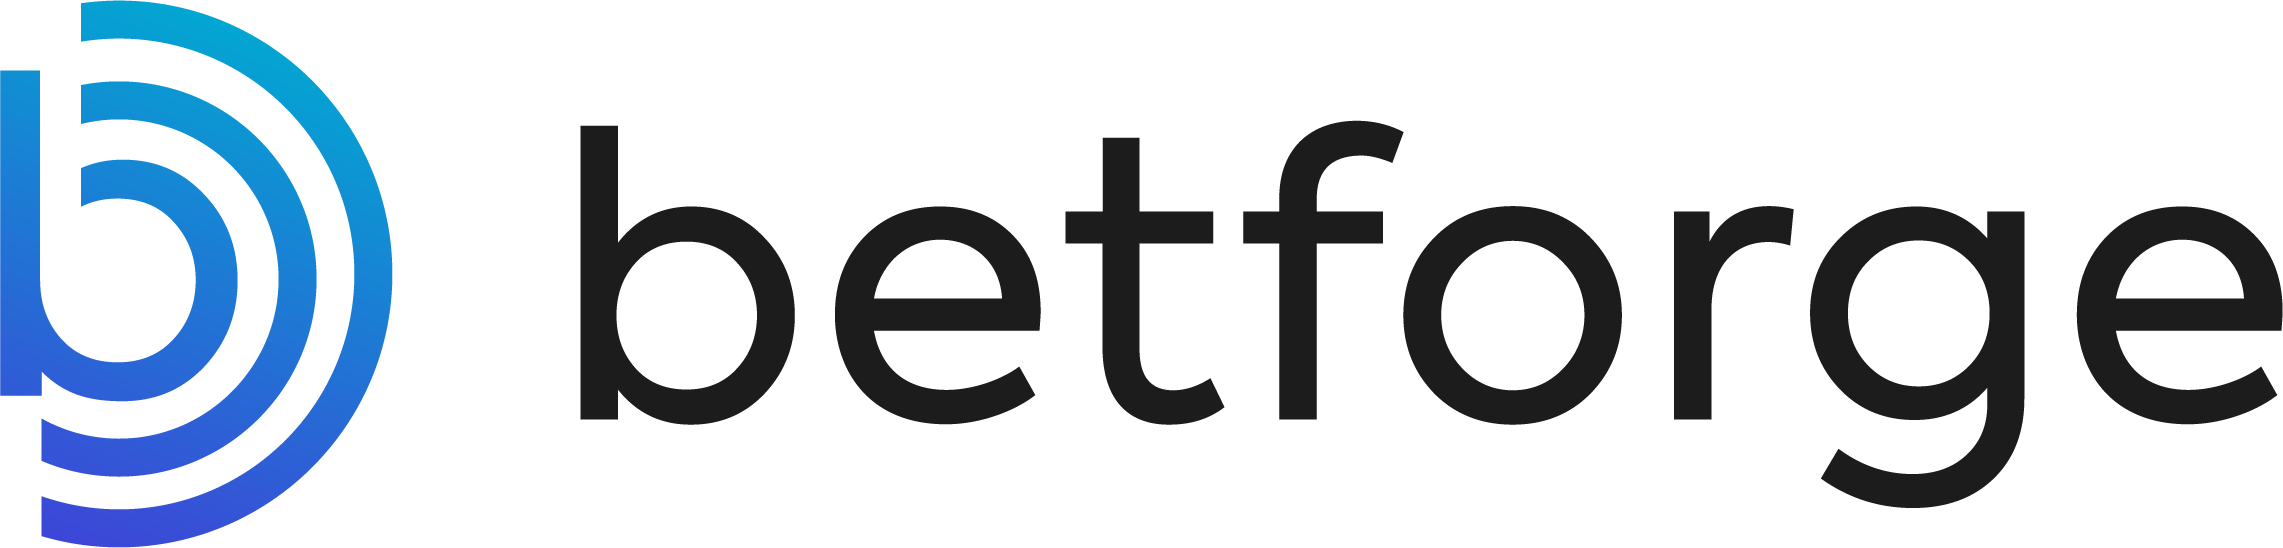 BetForge - undefined